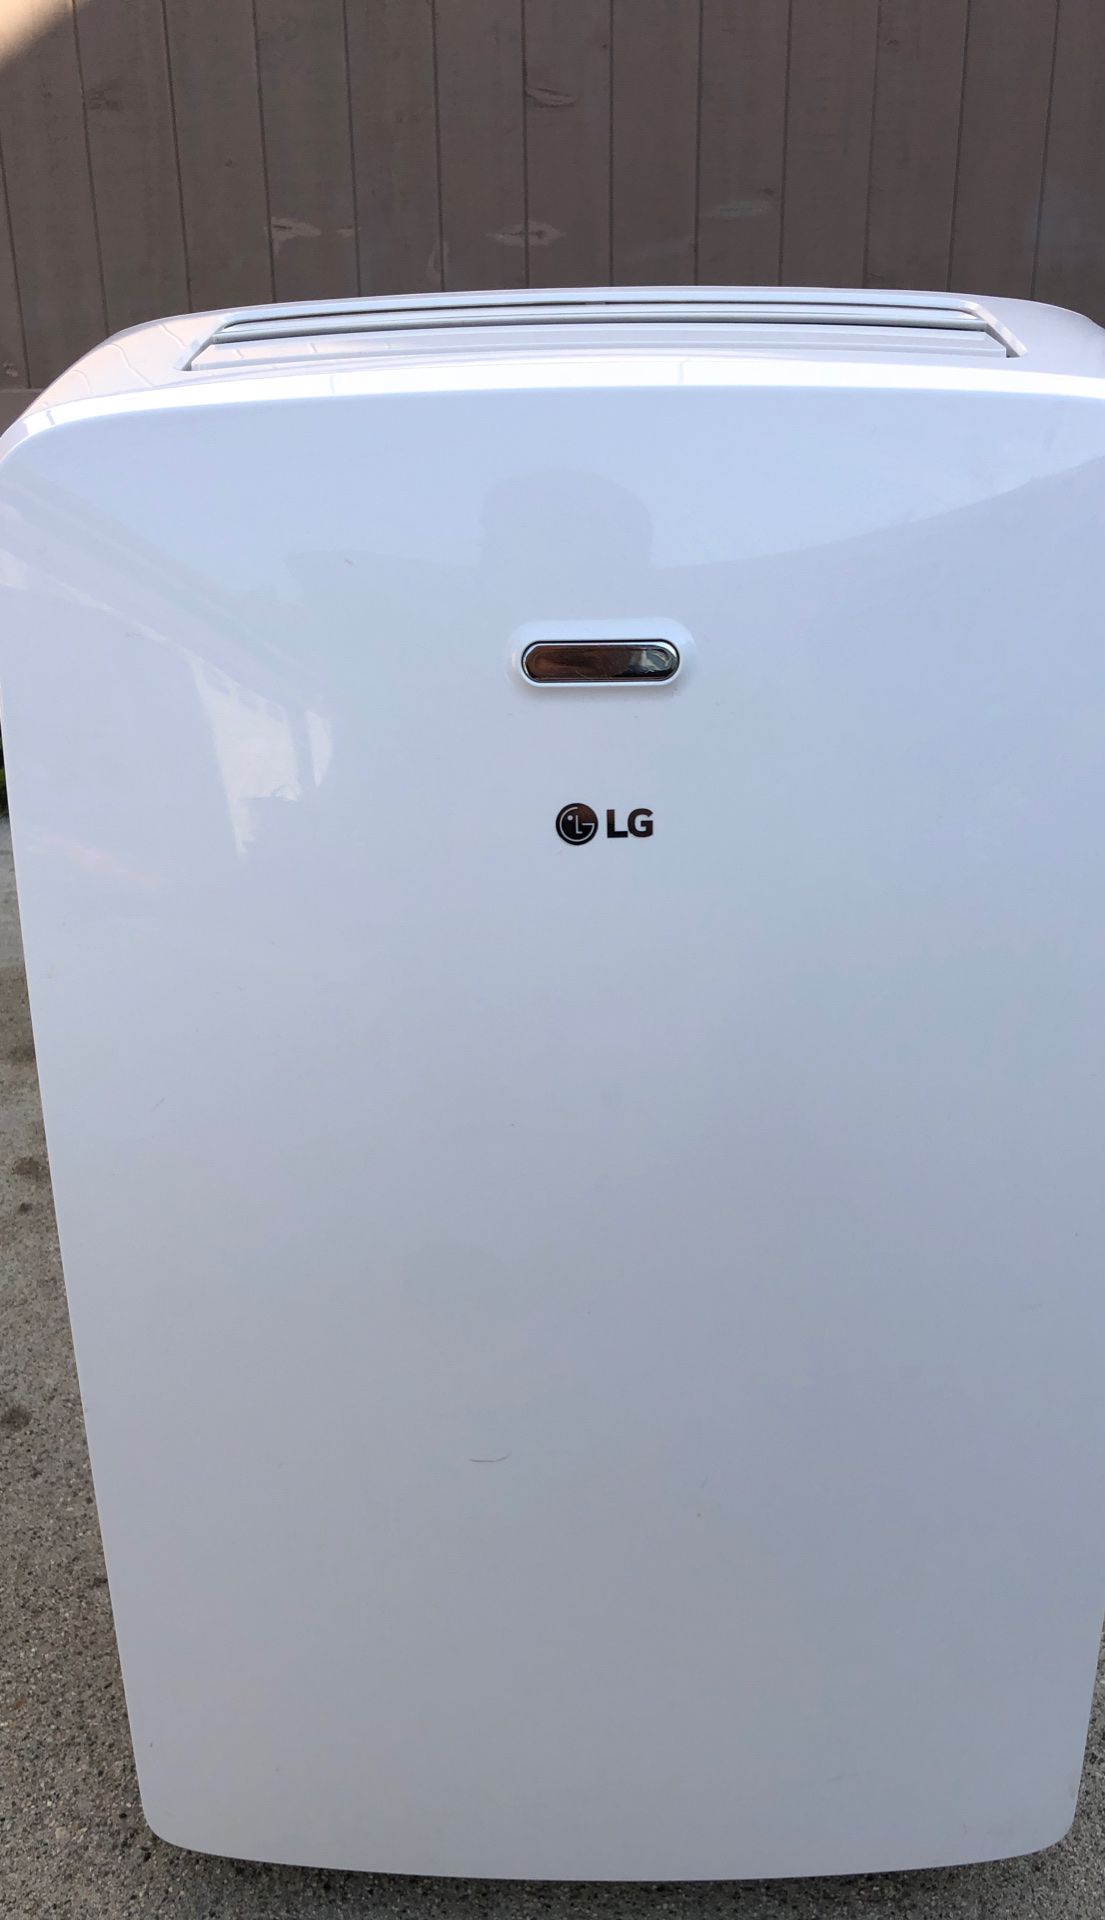 LG portable AC unit 10,200 BTU